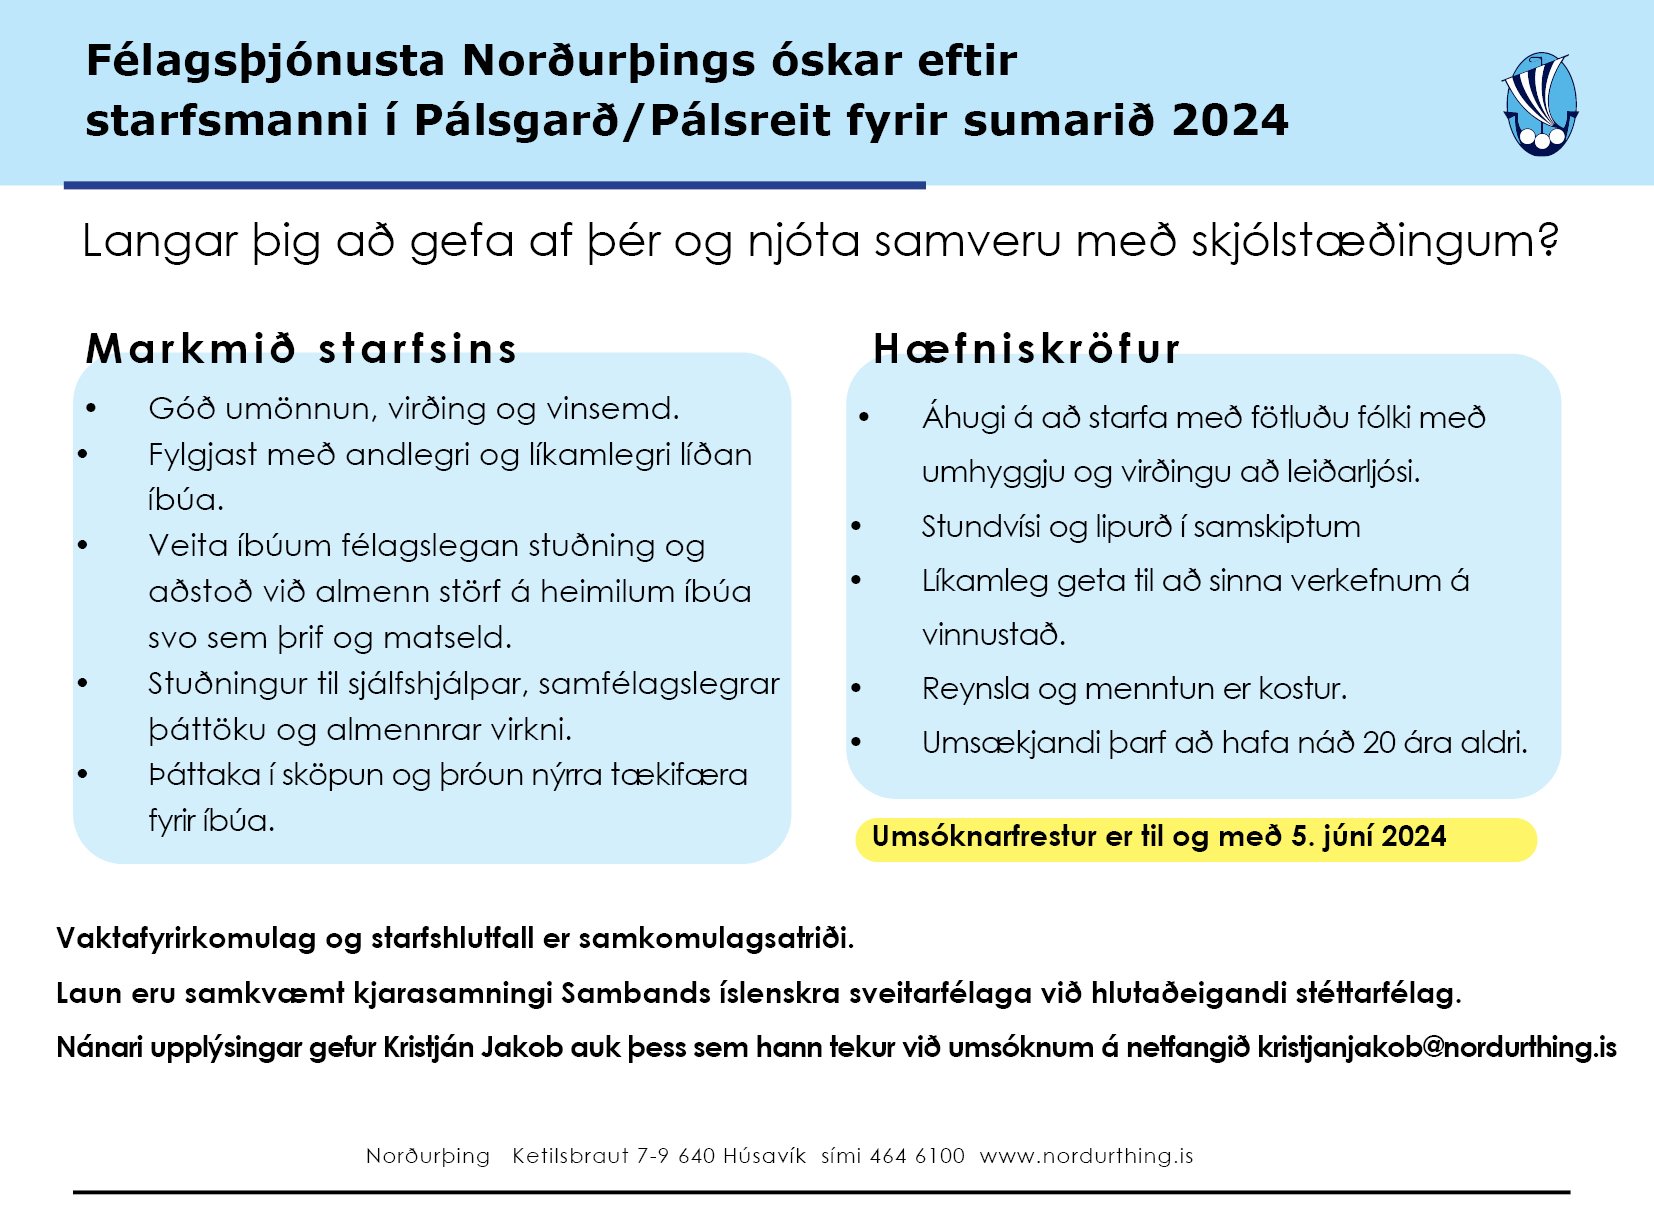 Félagsþjónusta  Norðurþings óskar eftir starfsmanni í Pálsgarð / Pálsreit fyrir sumarið 2024